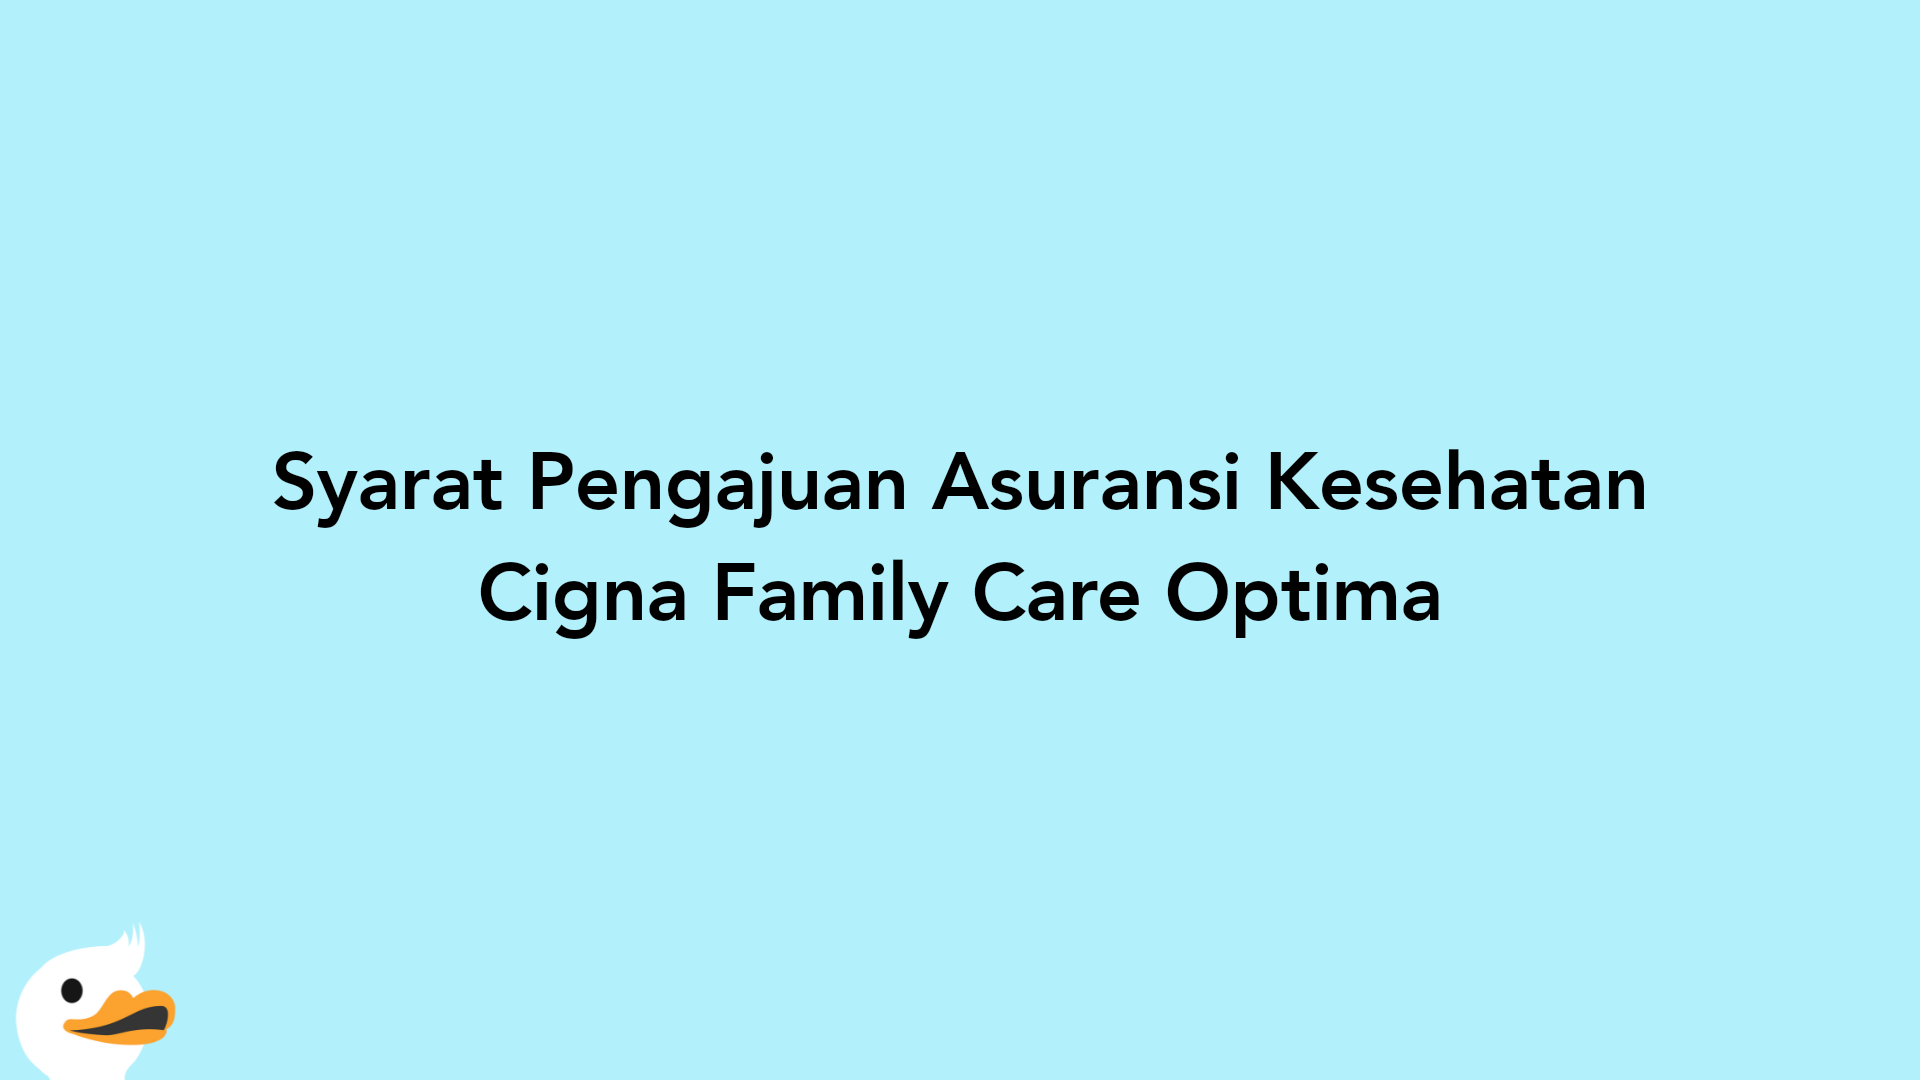 Syarat Pengajuan Asuransi Kesehatan Cigna Family Care Optima